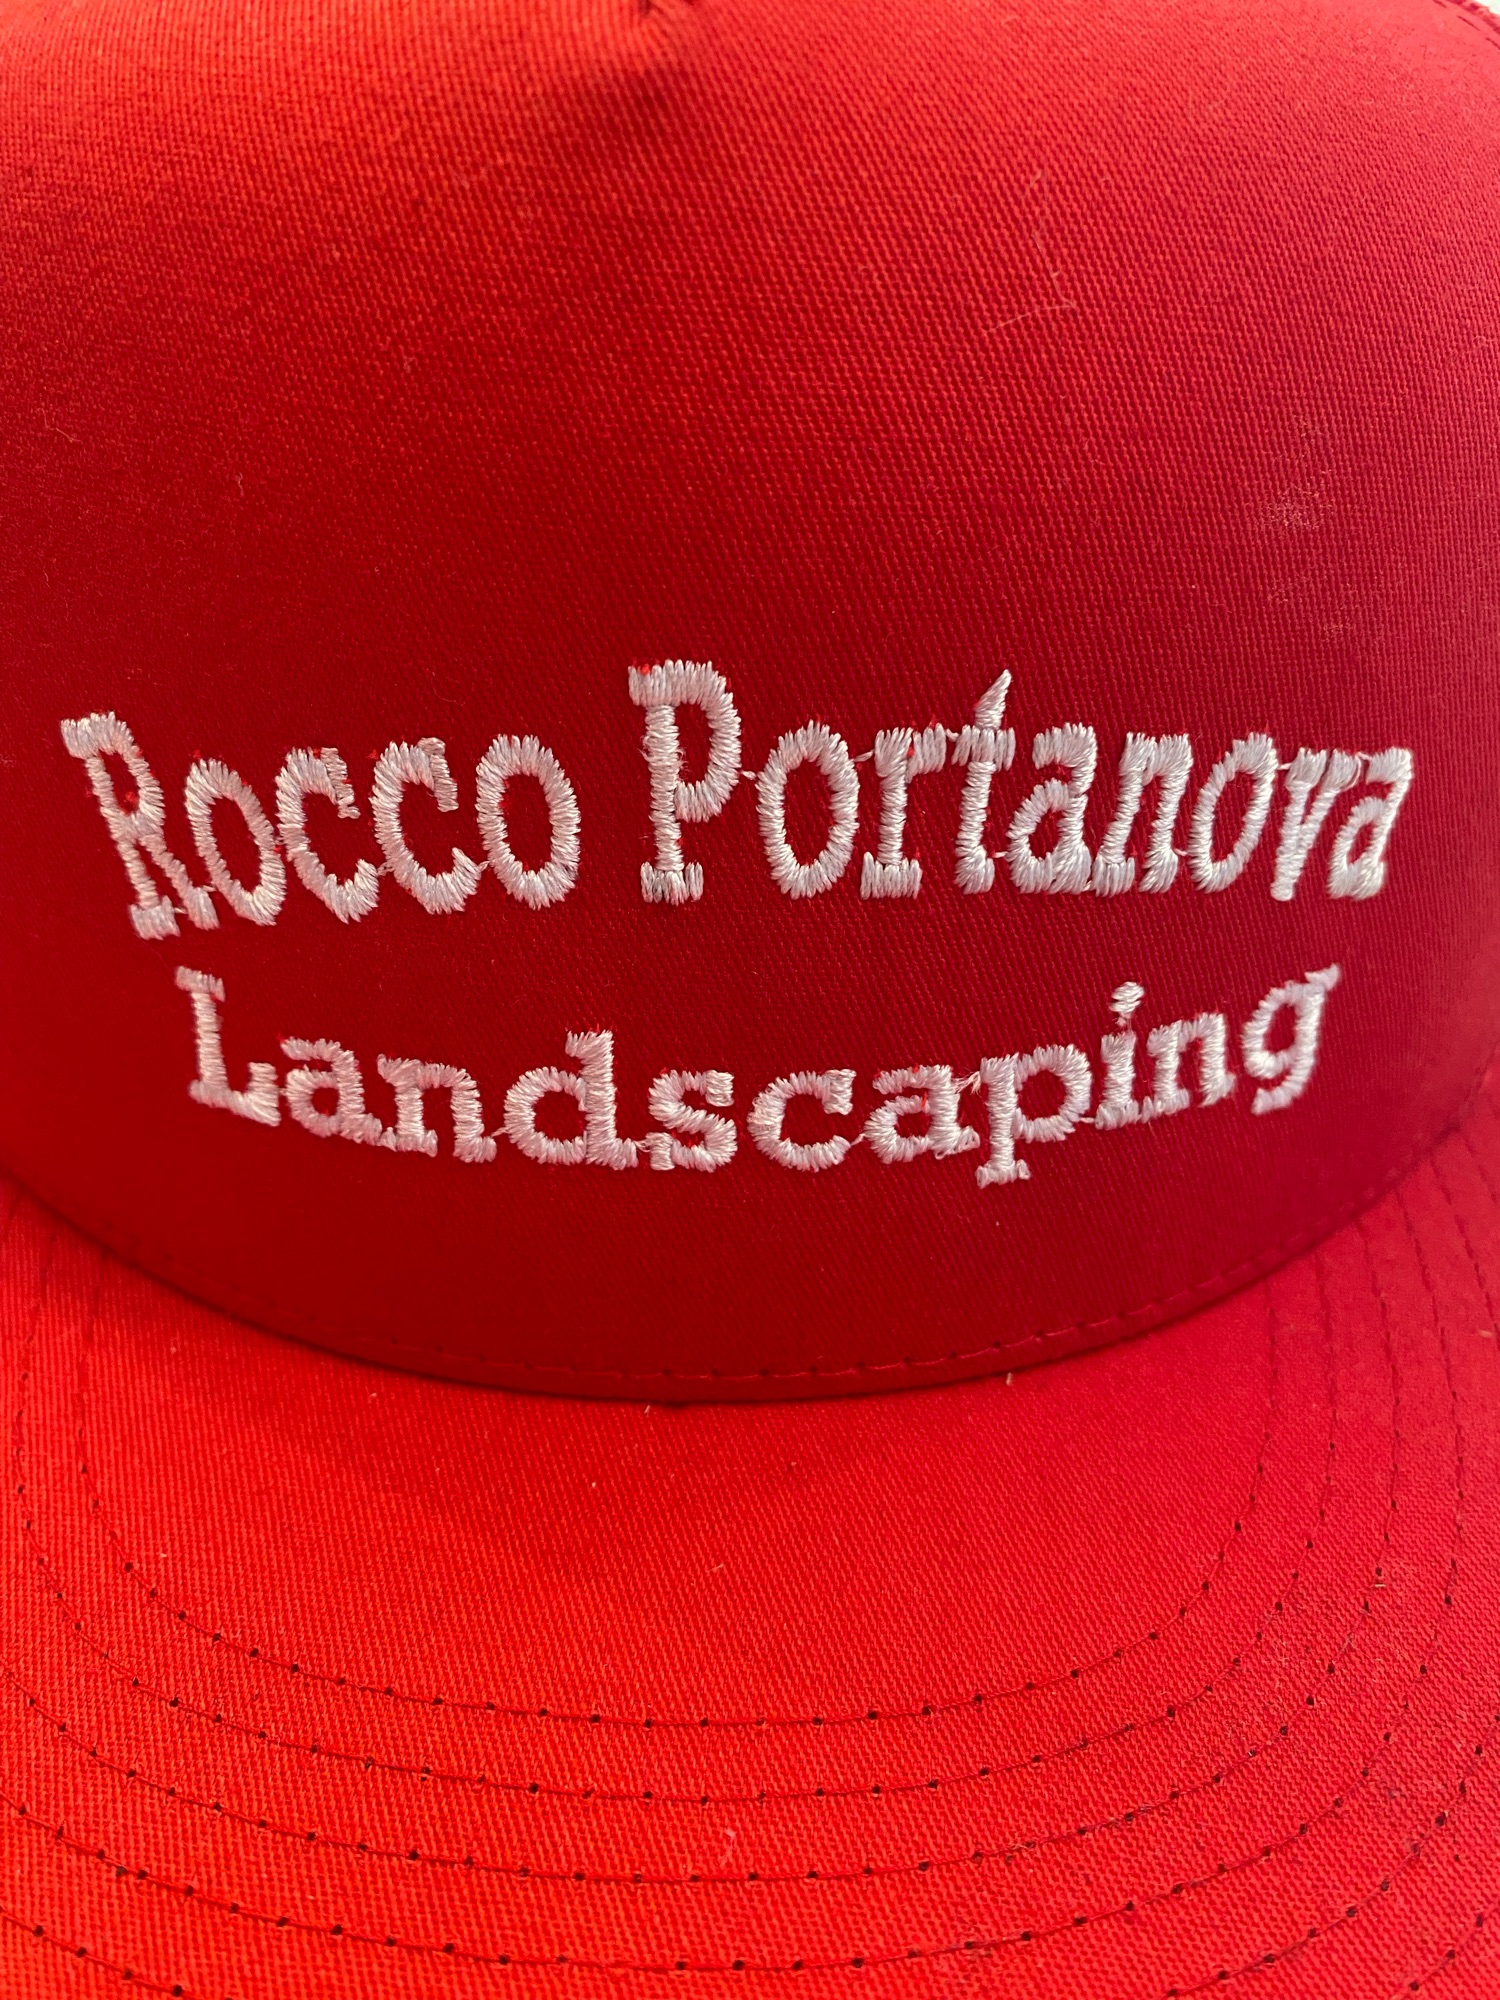 Rocco Portanova Landscaping Logo